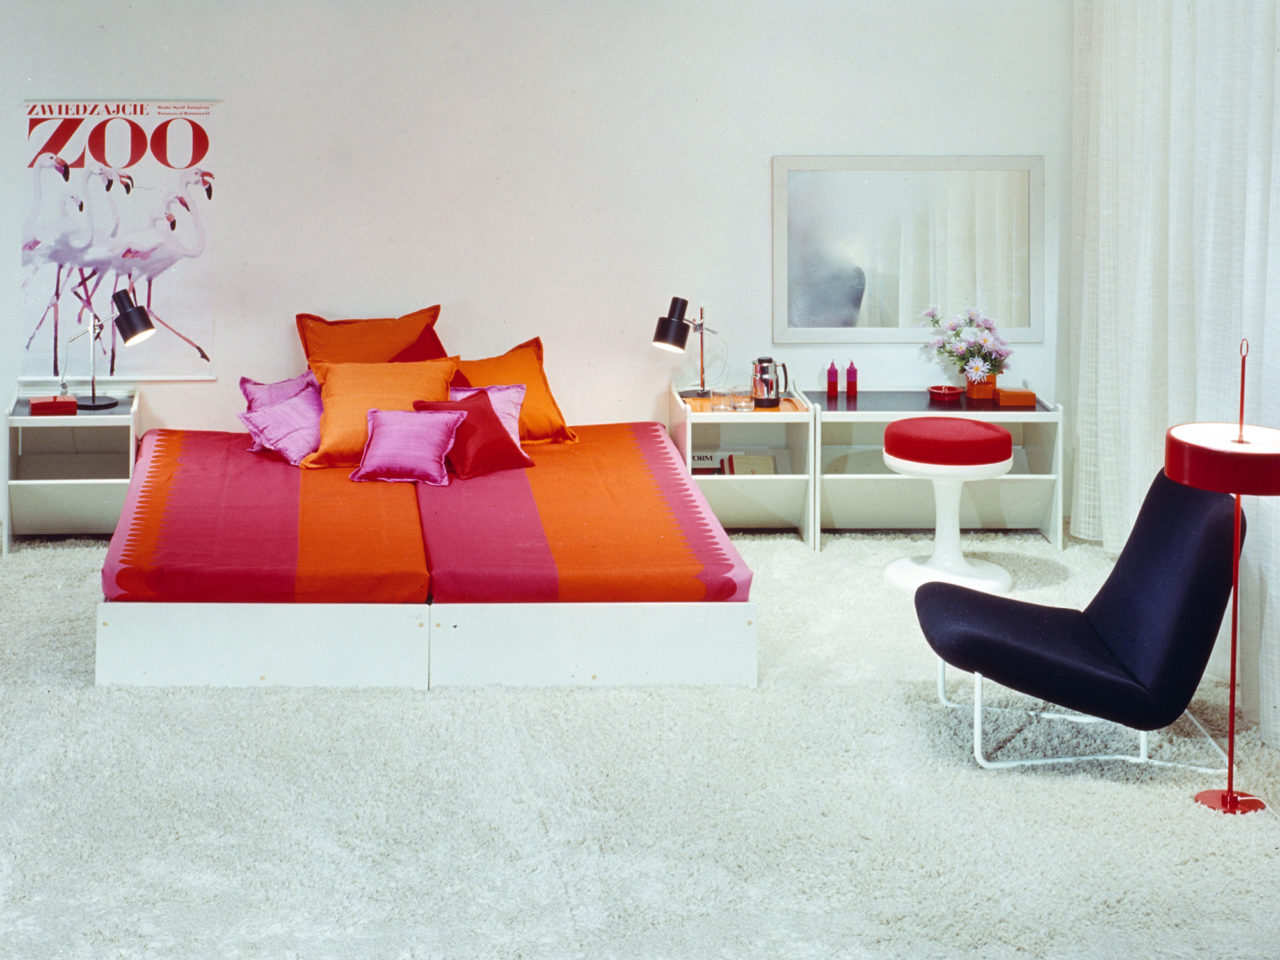 Ett sovrum i vitt med färgstarka detaljer, krönt av en säng, modell HEPP, med textilier i godispapperslikt rosa och orange.